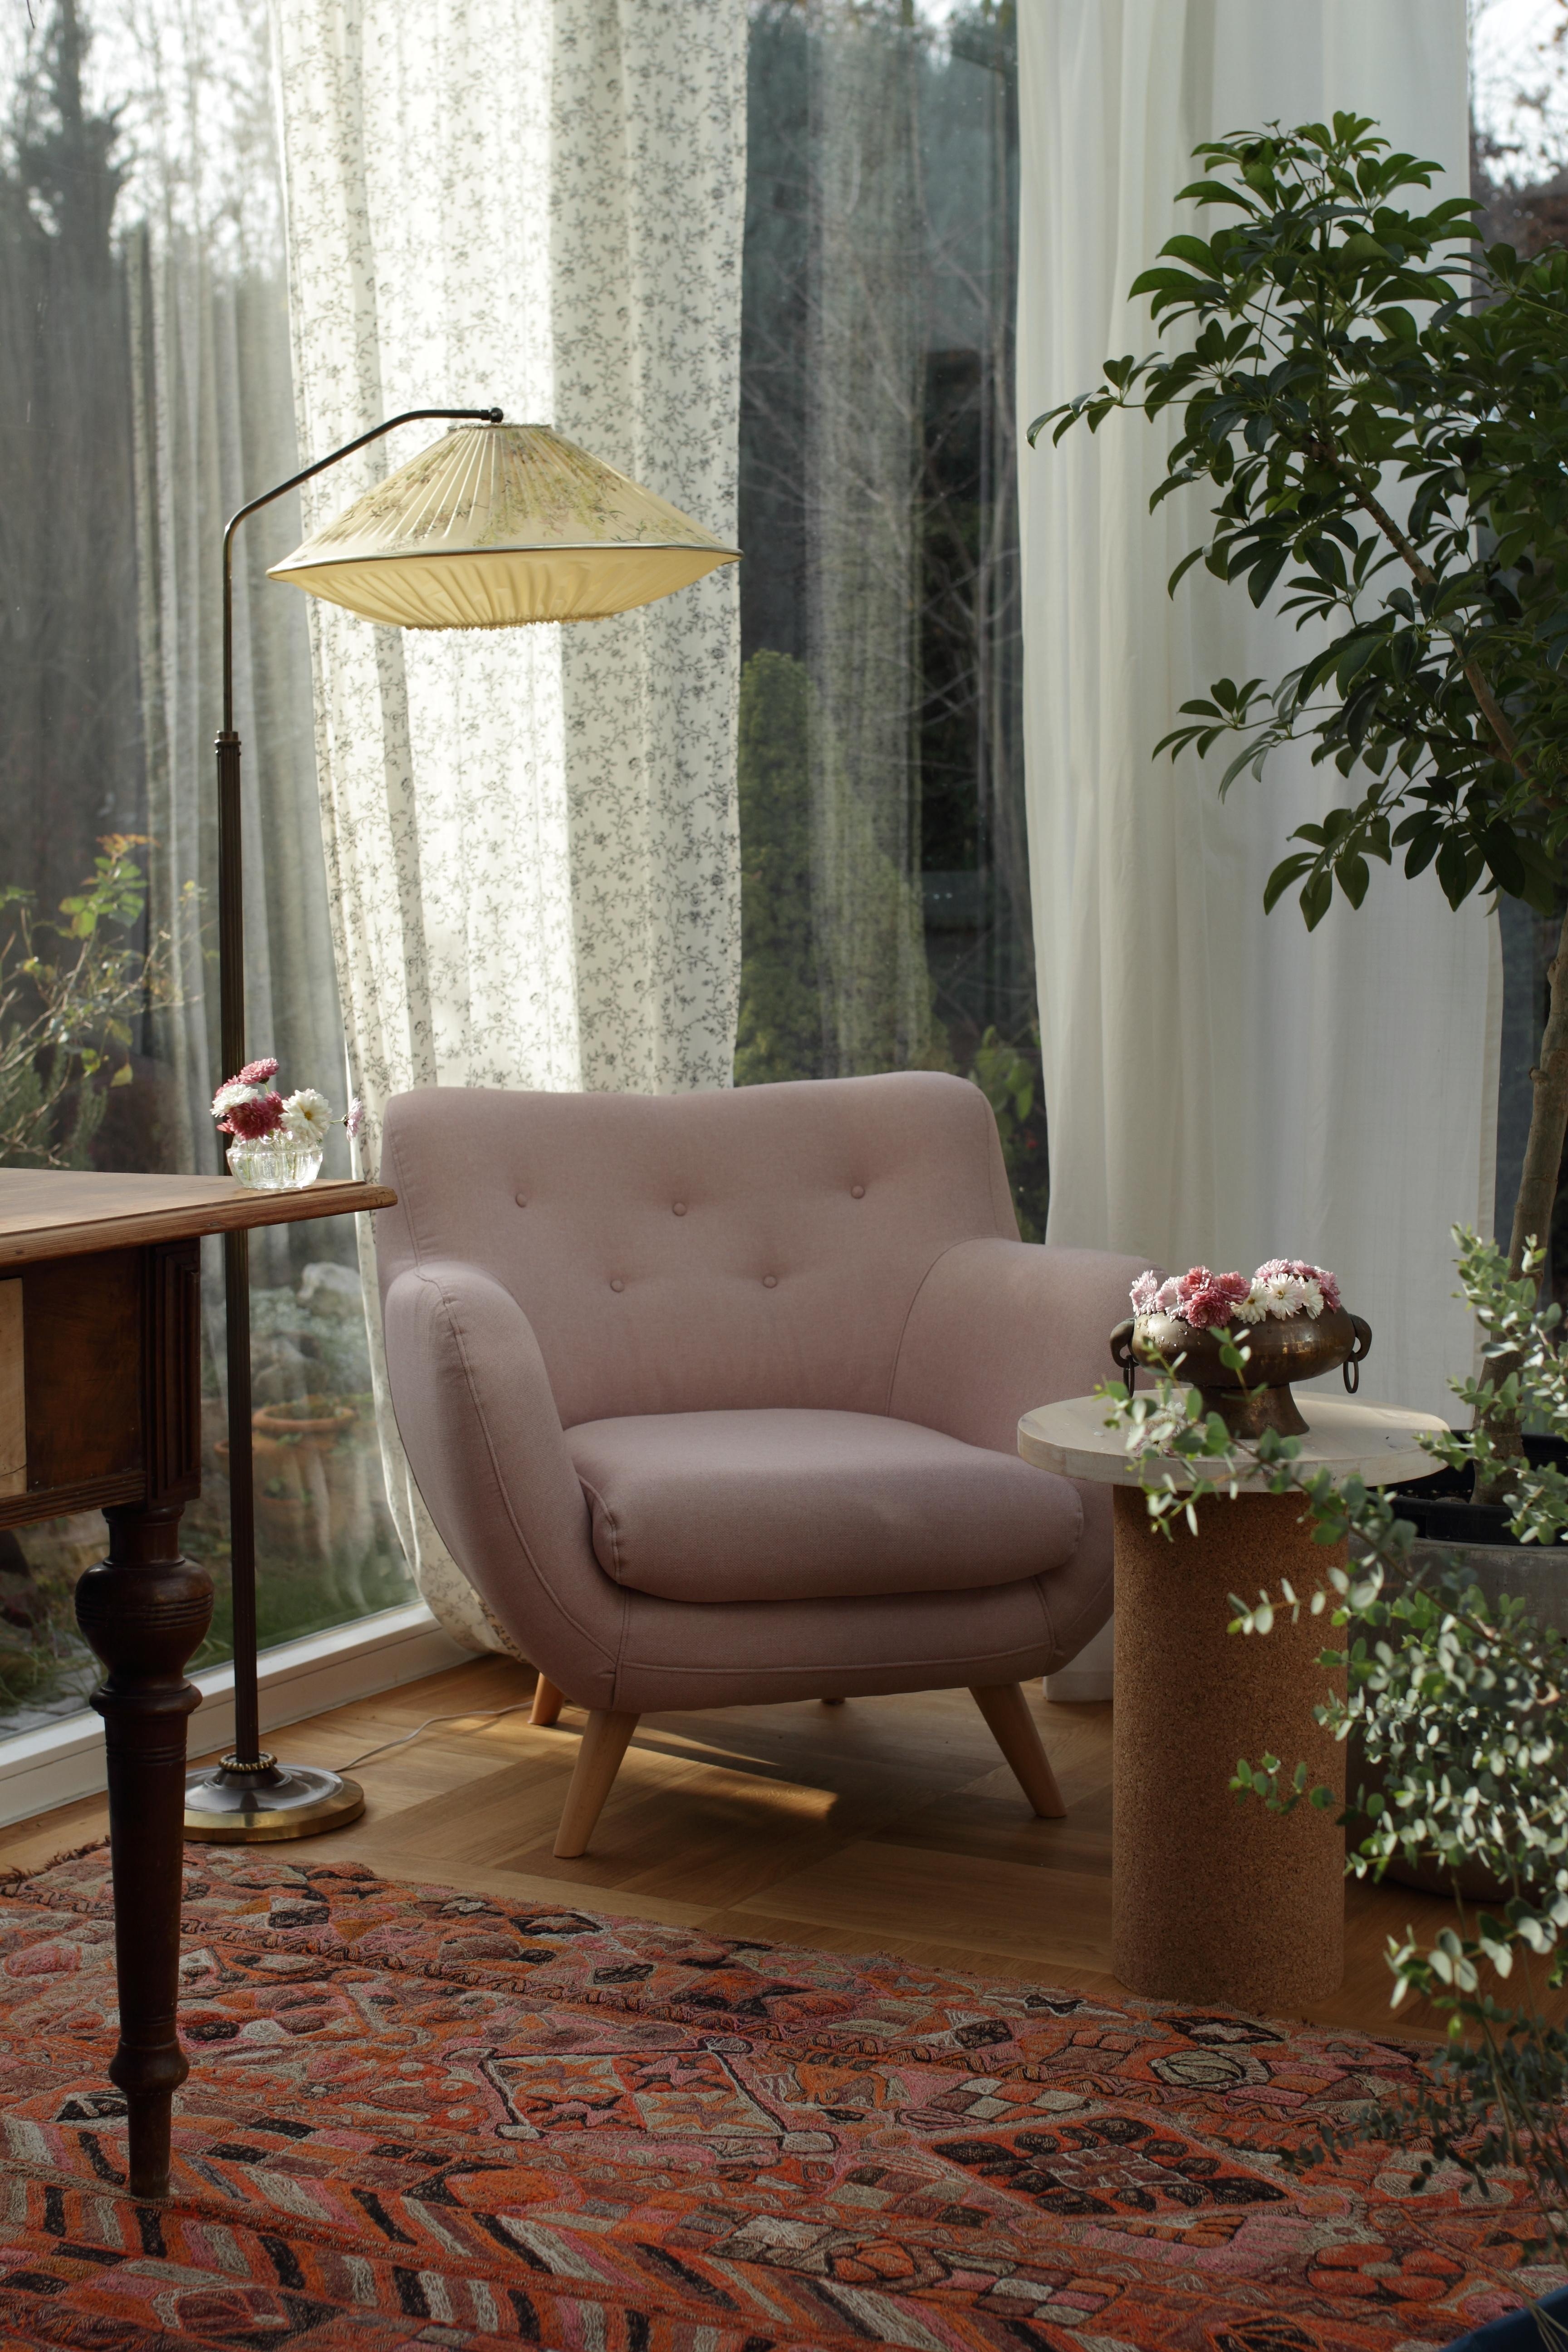 #leseecke #wohnzimmer #Wintergarten #livingroom #interiorinspo